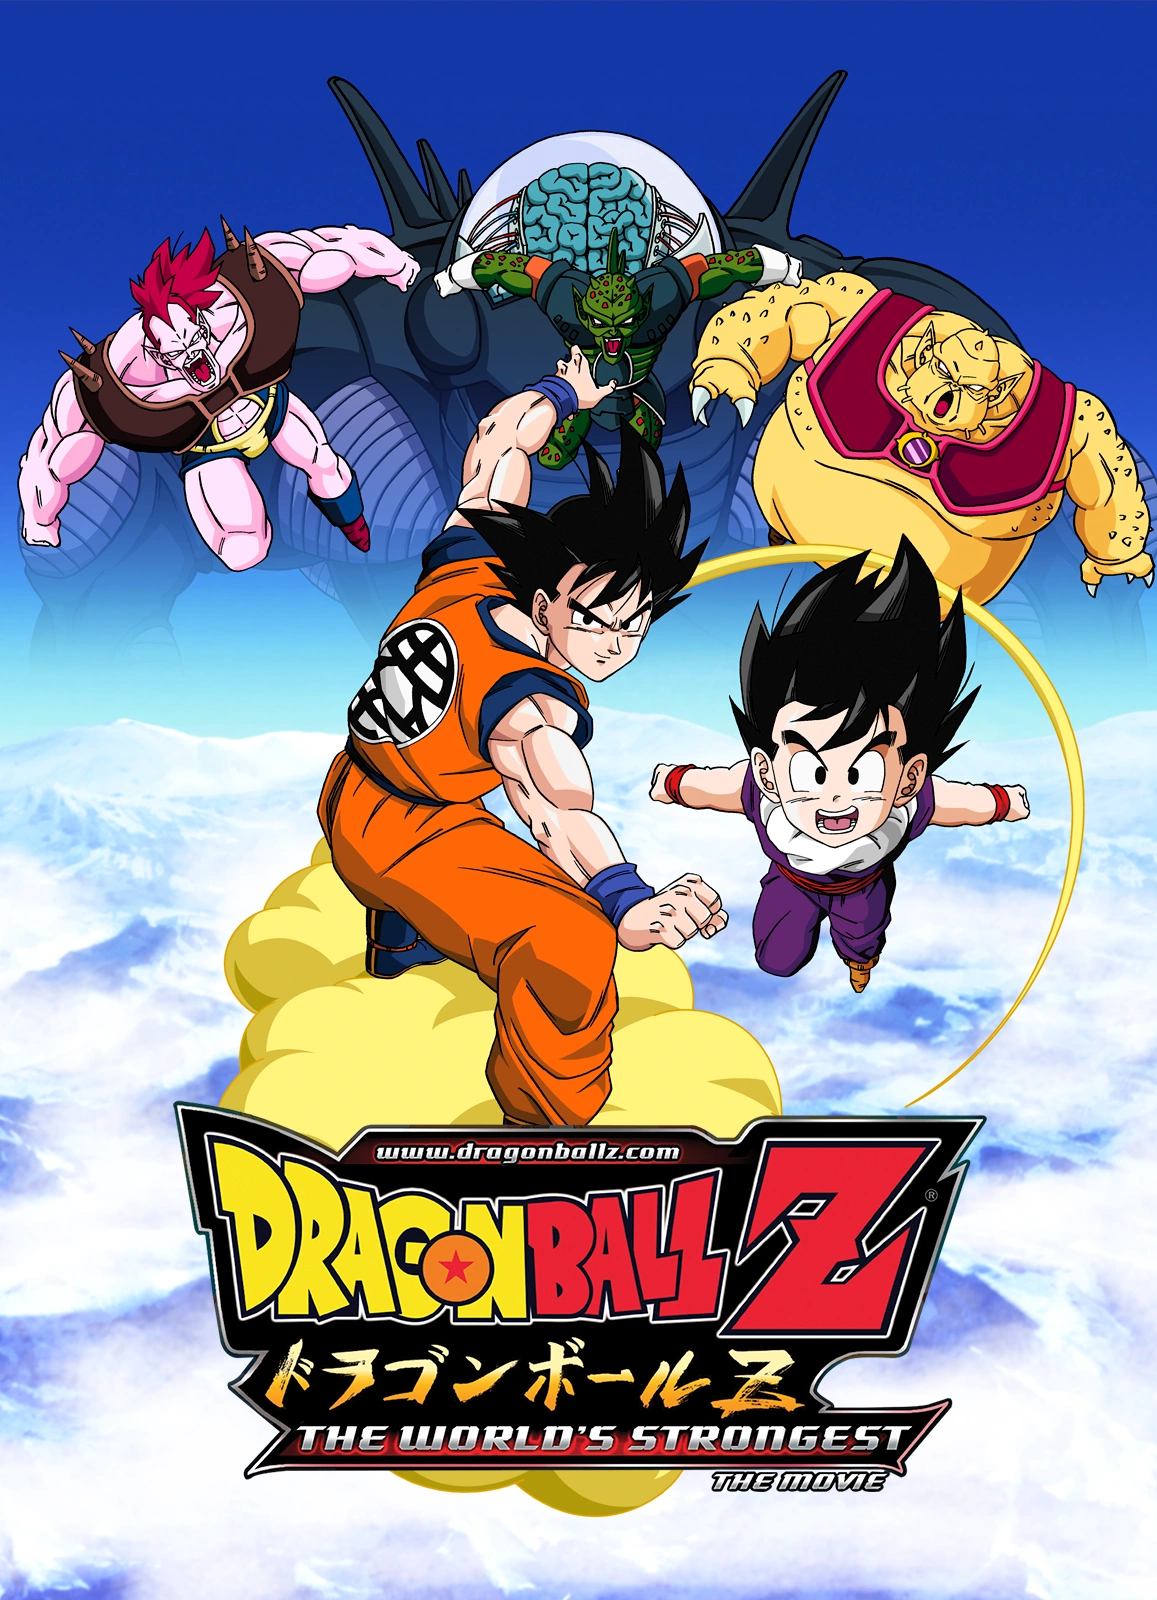 Filmes de Dragon Ball Z chegam legendados à Crunchyroll